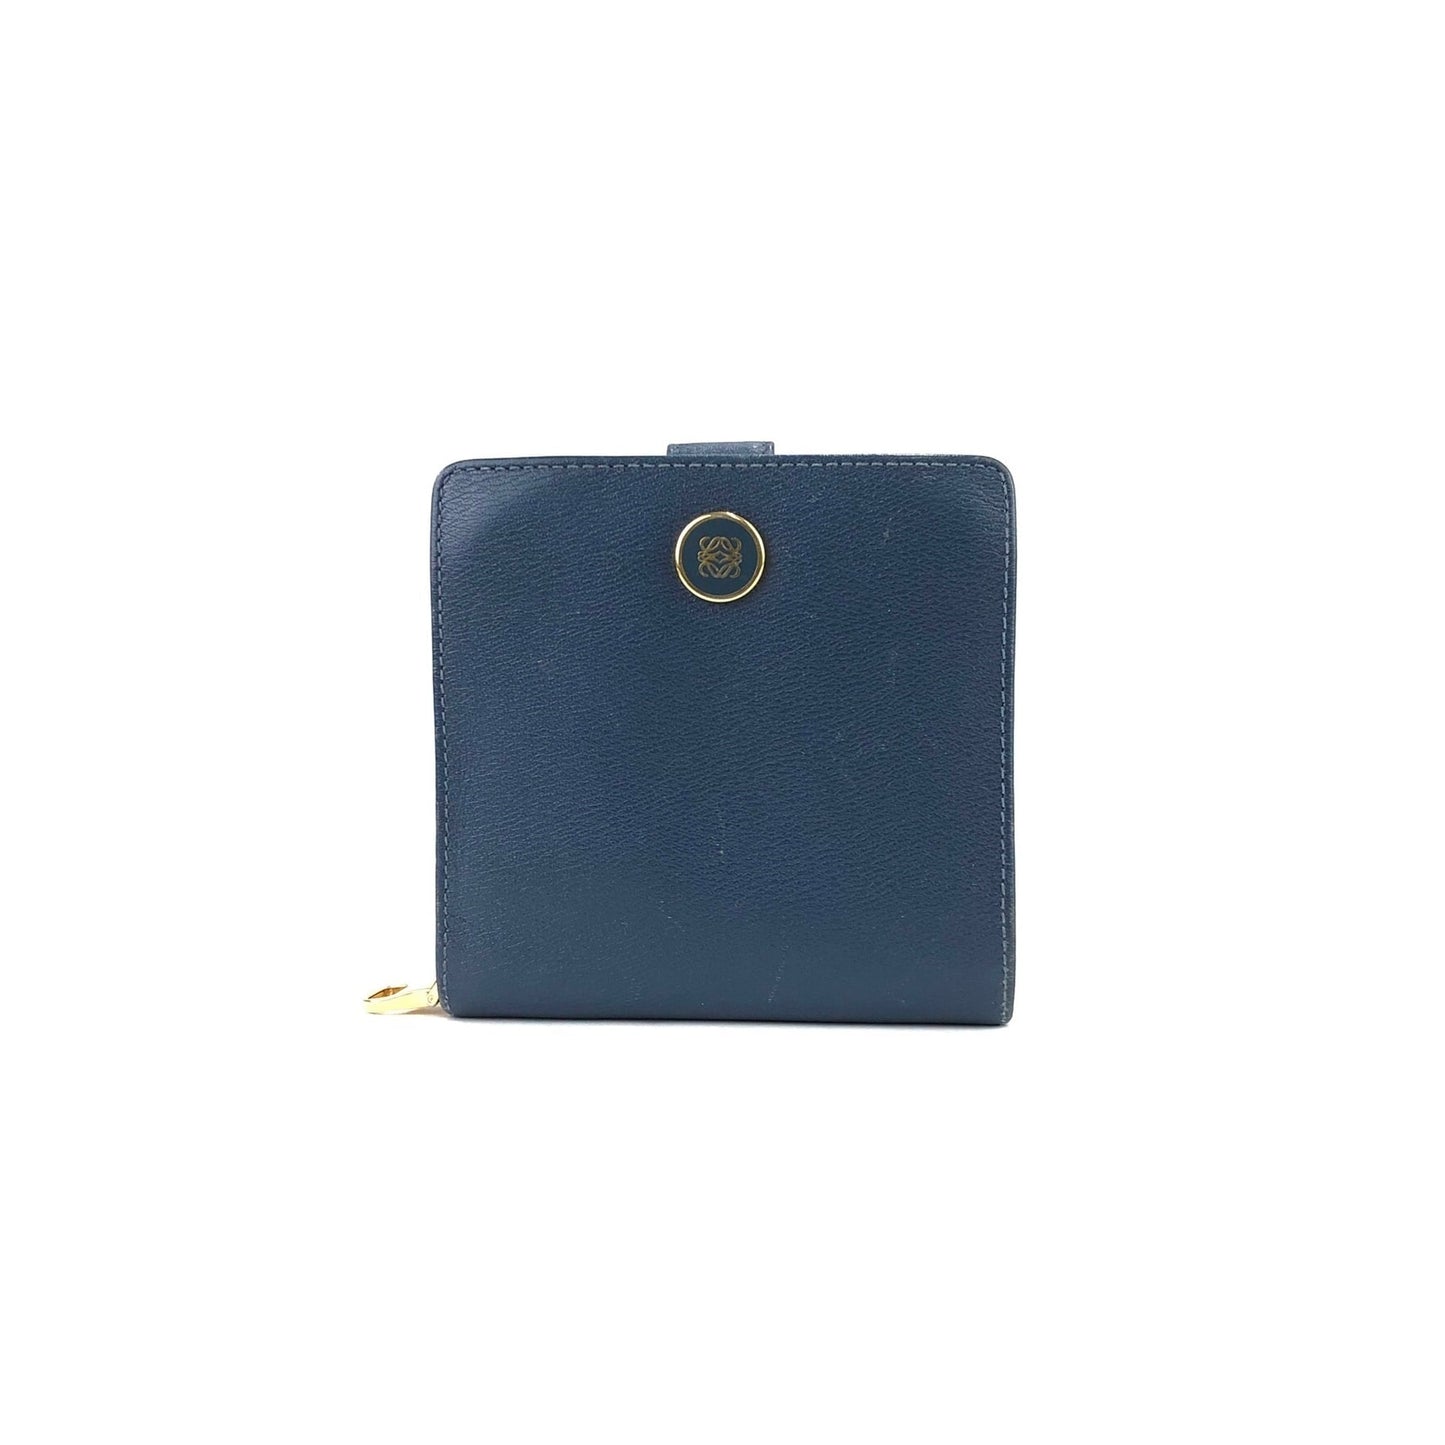 LOEWE anagram compact wallet leather navy vintage old 3nn654